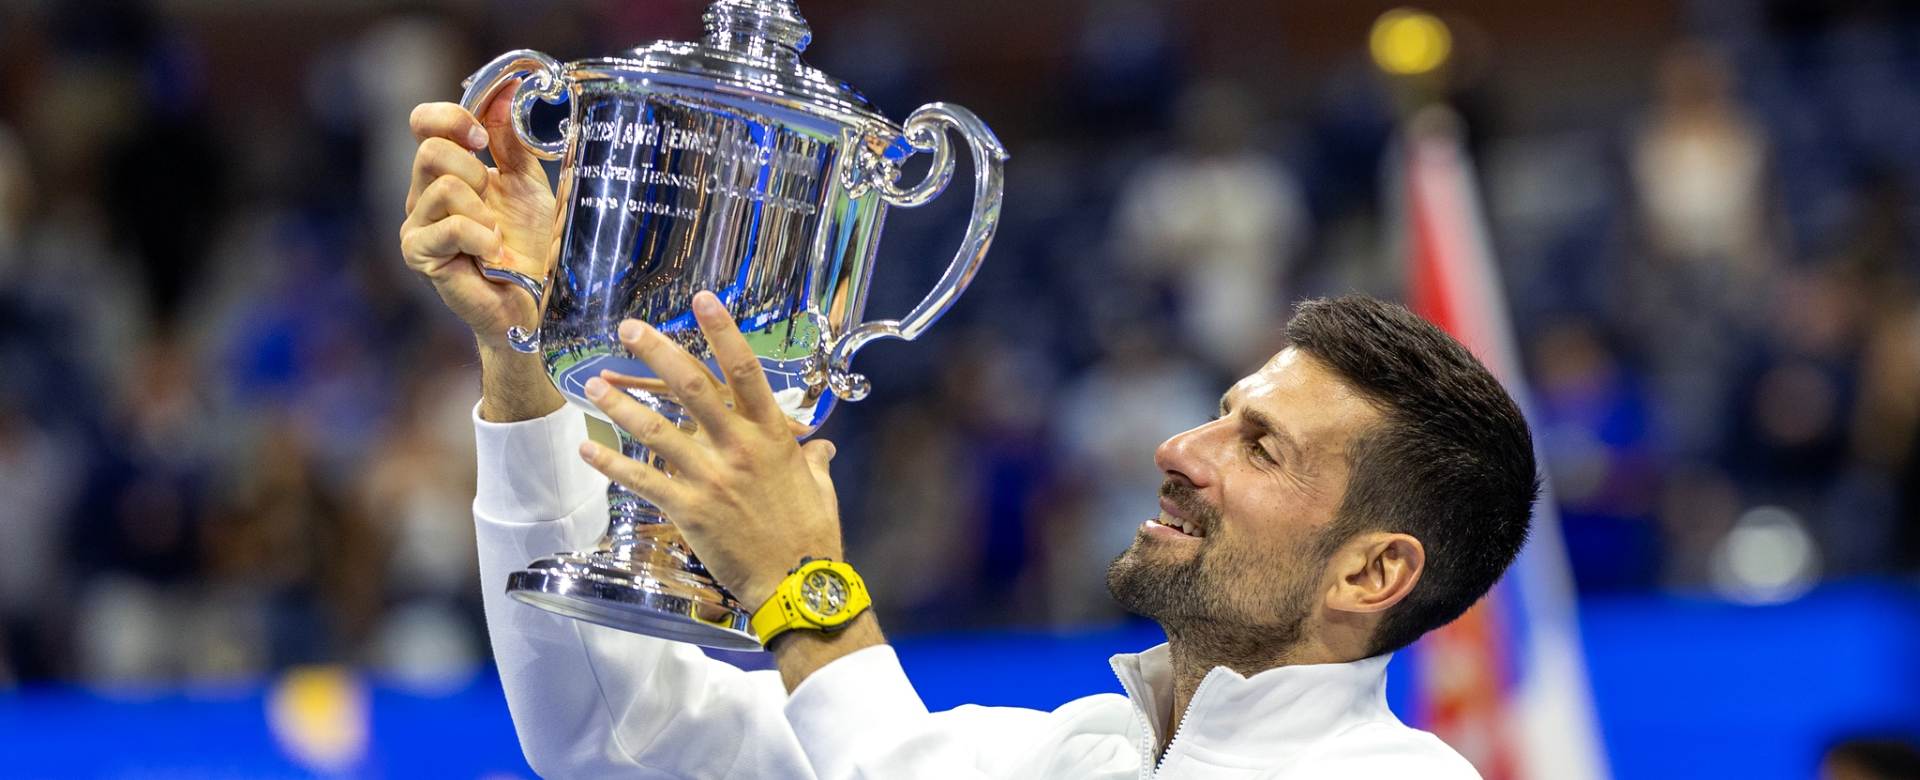 Khám phá BST đồng hồ của tay vợt huyền thoại Novak Djokovic